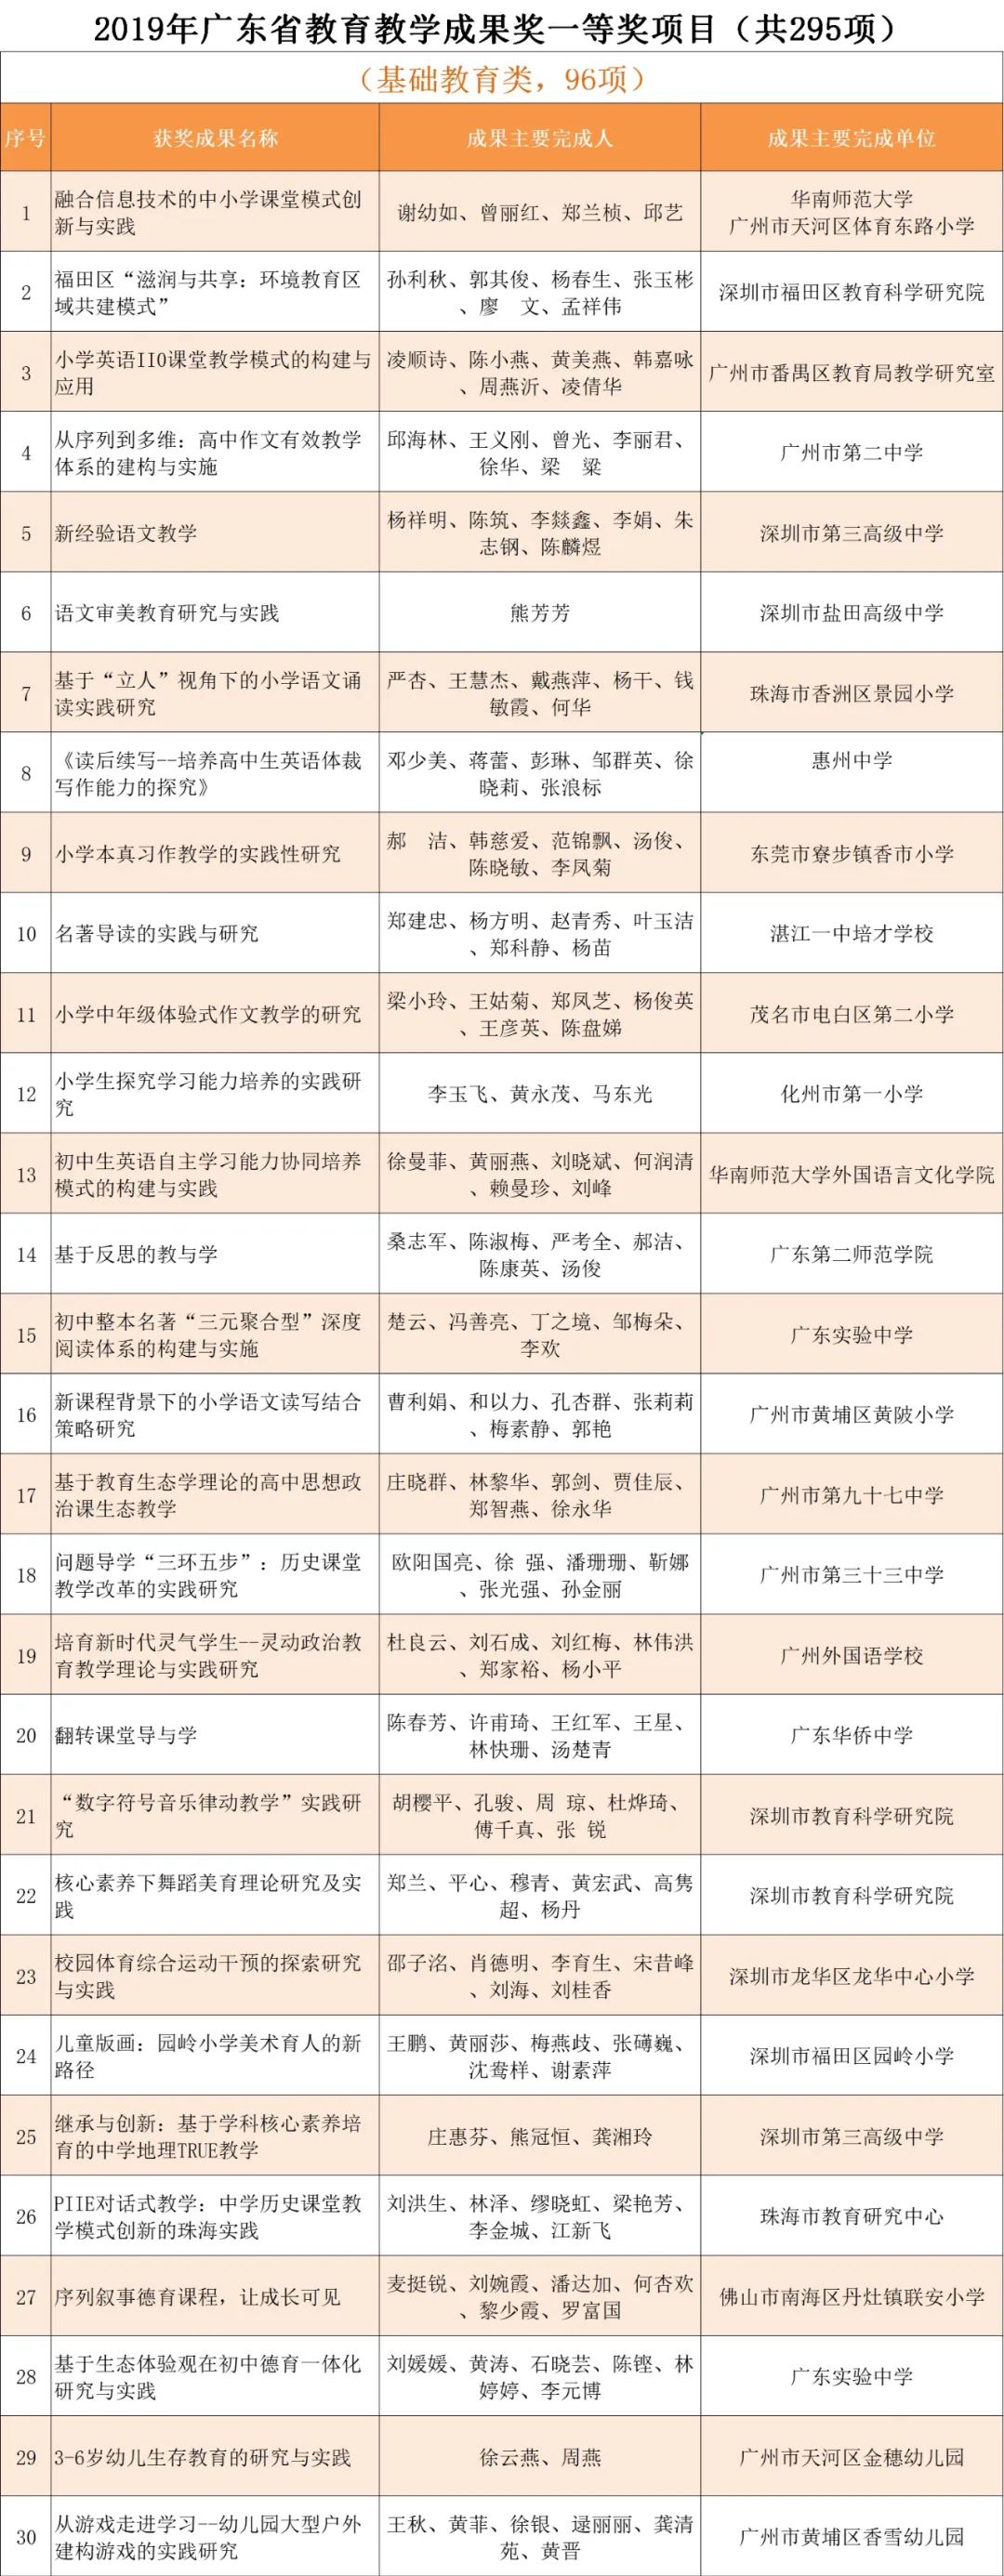 670项 19年广东省教育教学成果奖获奖项目名单出炉 广东新闻